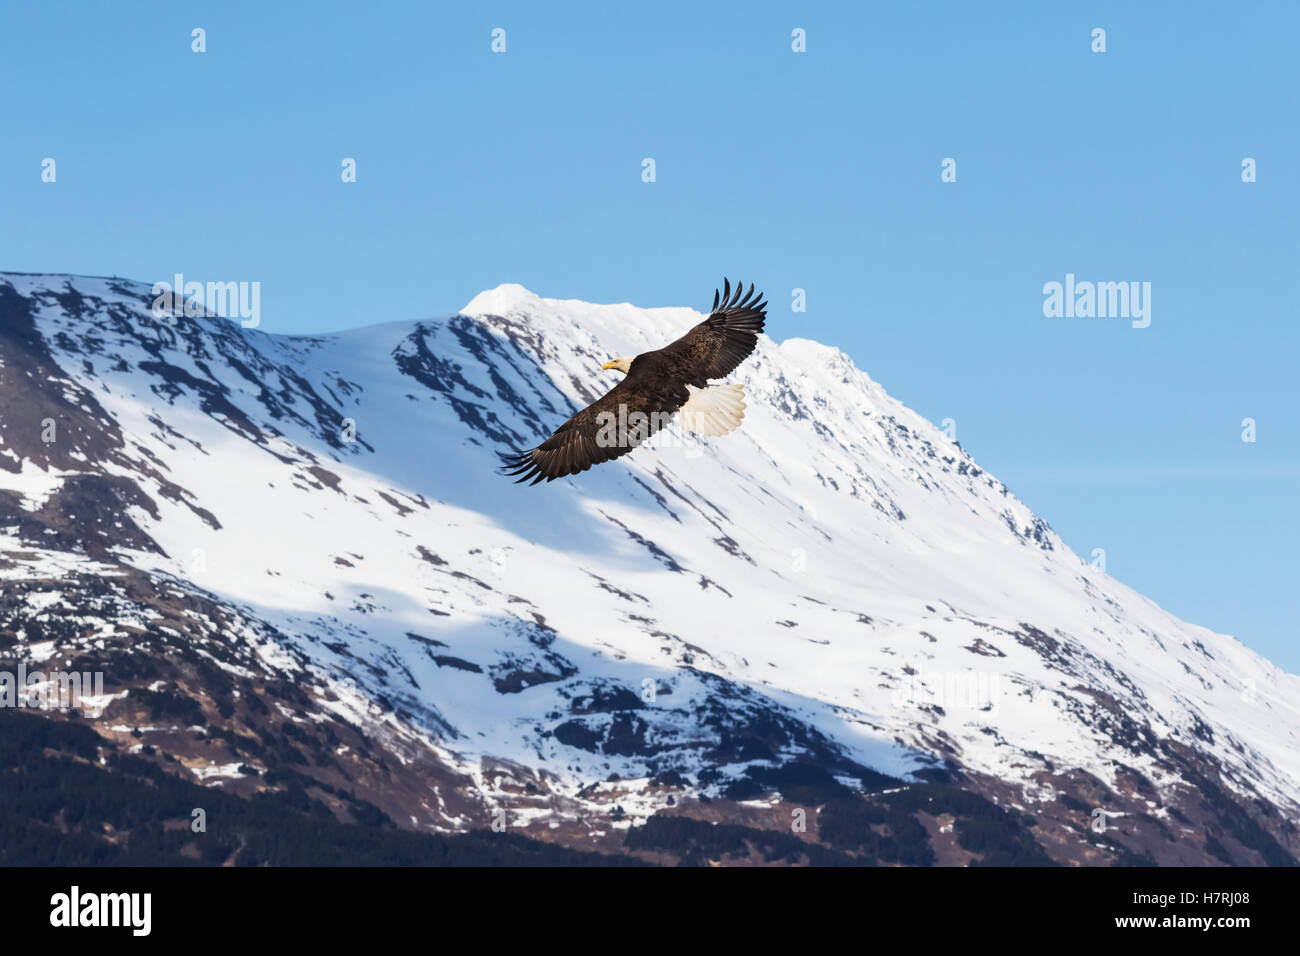 Un Águila Balda Adulta (Haliaeeeeet leucocephalus) Se extiende Alas y vuela Junto a las Montañas Cubiertas de Nieve en el Valle Portage de la zona Sur-Central A... Foto de stock